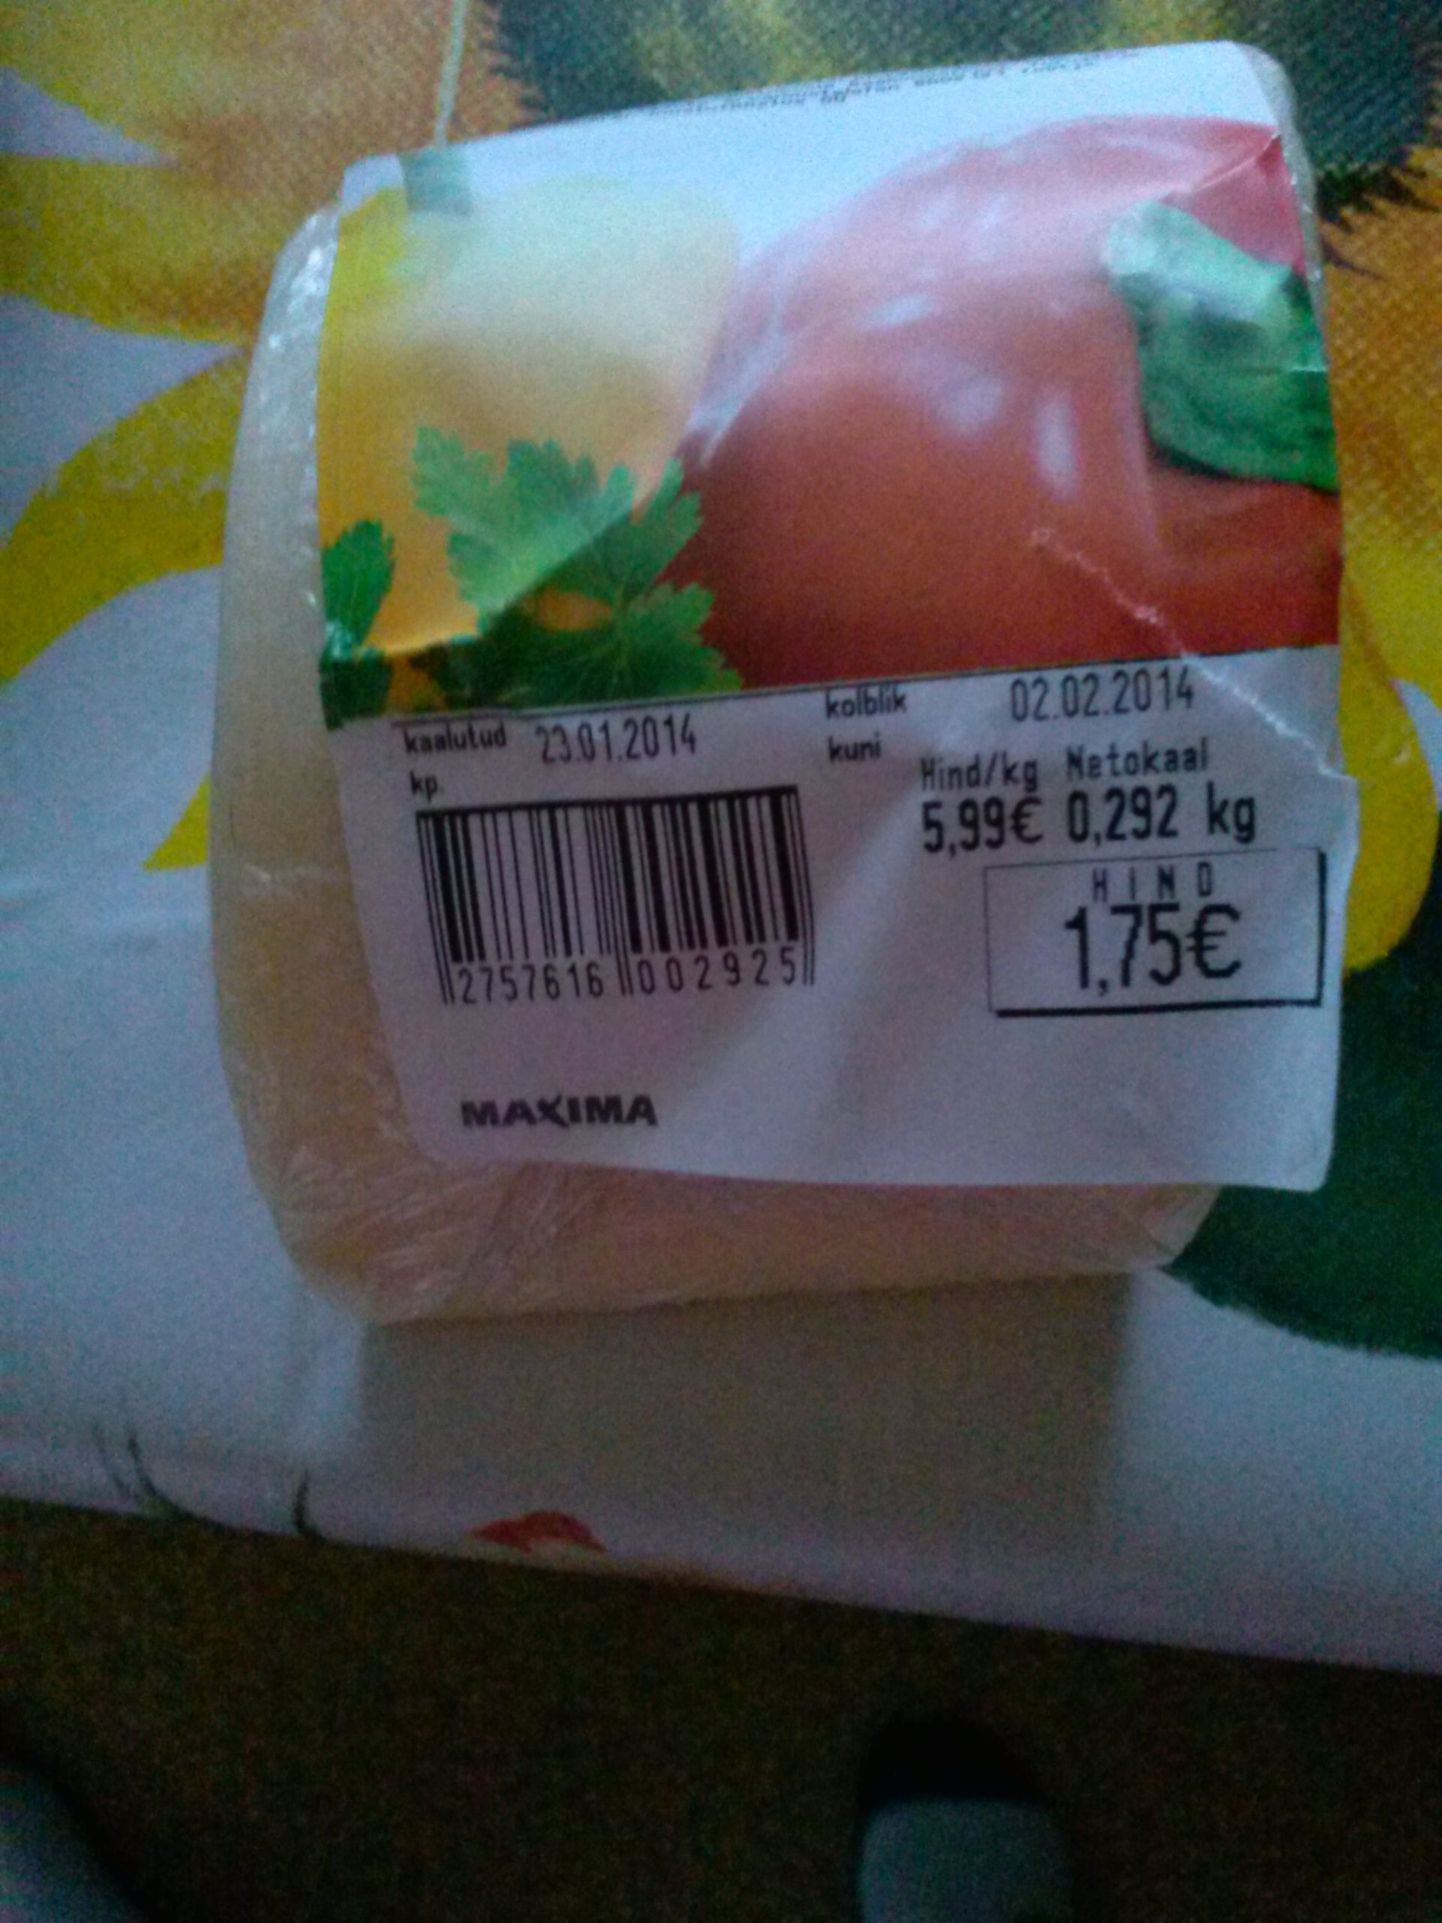 Купленный в Maxima сыр.